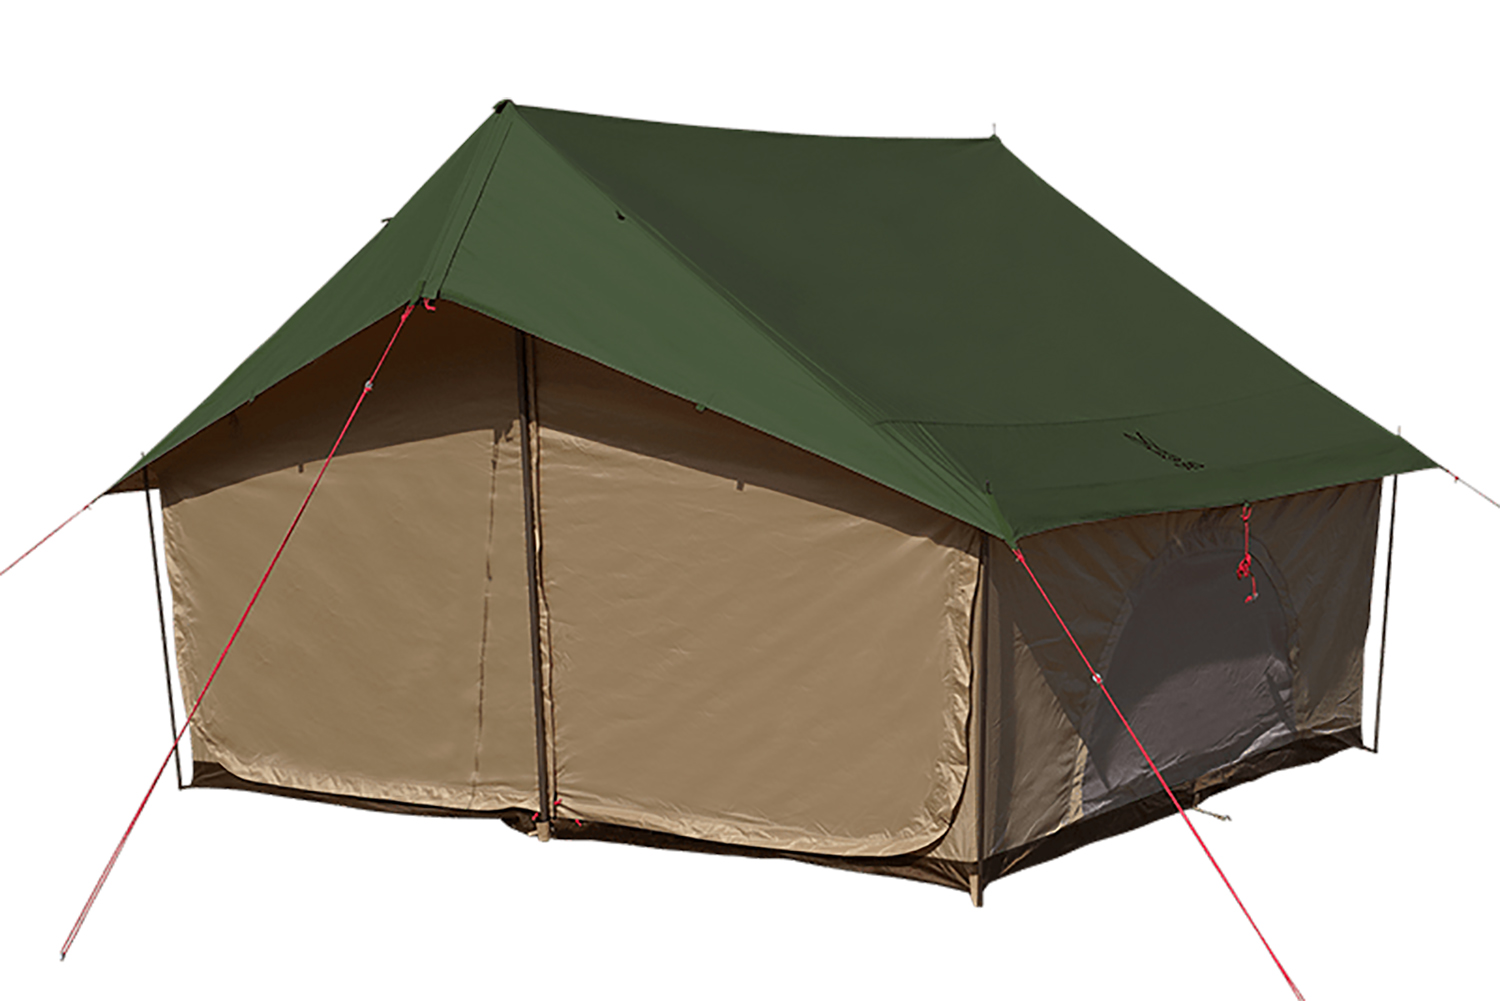 Dodがトレンドの 家型テント を魅力的に仕上げた新作を発売 Be Pal